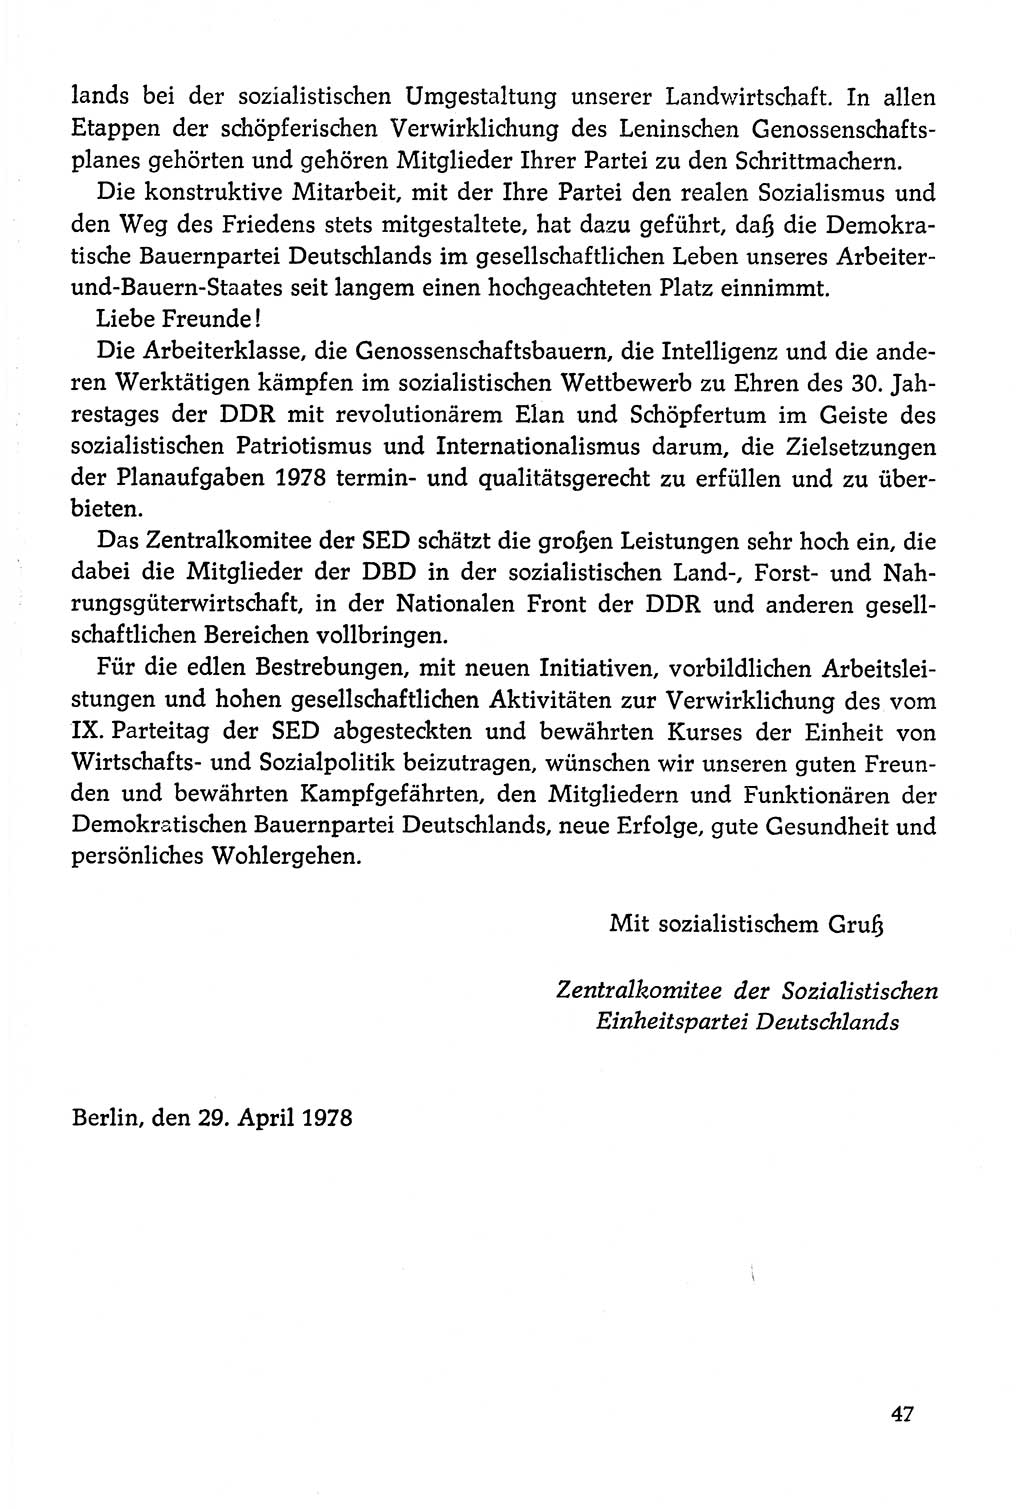 Dokumente der Sozialistischen Einheitspartei Deutschlands (SED) [Deutsche Demokratische Republik (DDR)] 1978-1979, Seite 47 (Dok. SED DDR 1978-1979, S. 47)